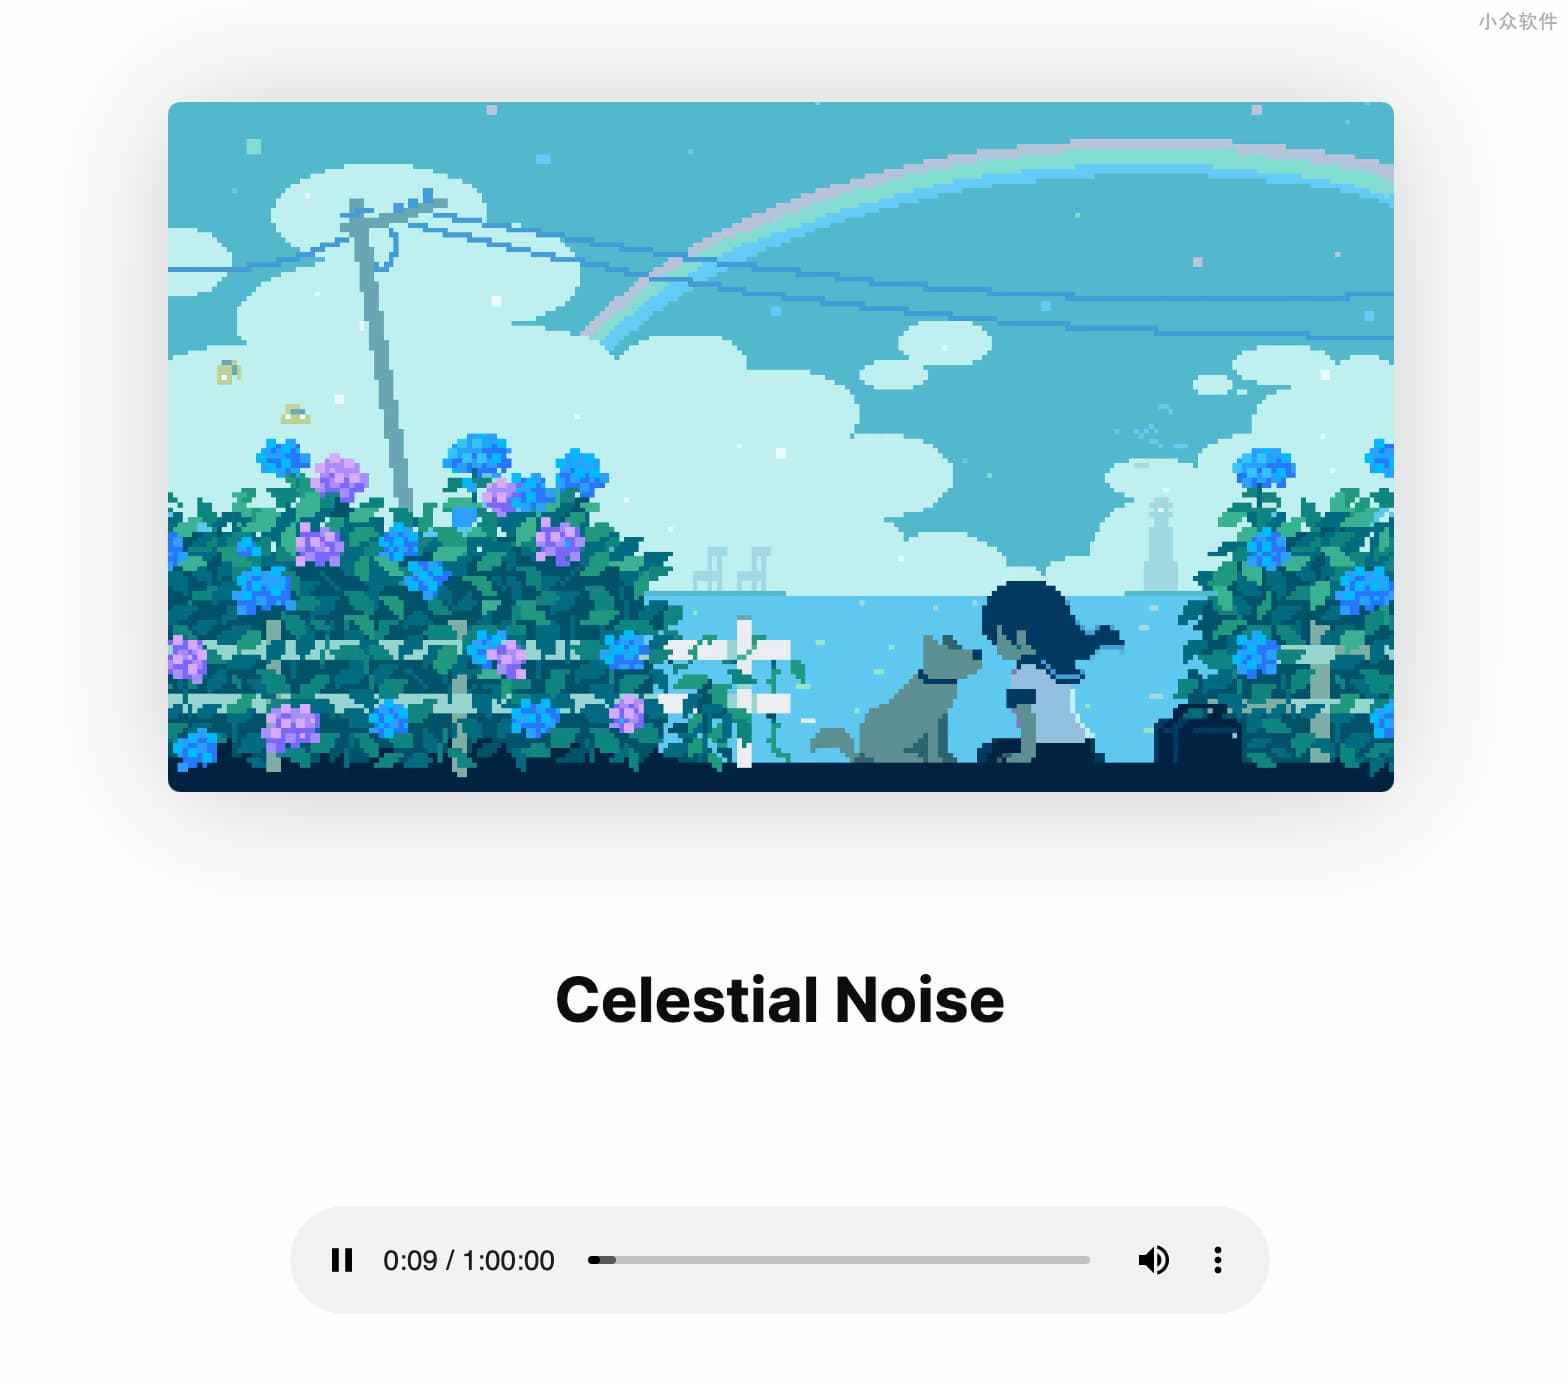 Noize - 10种精致场景下的背景音/白噪音，用来放松或者专心 3